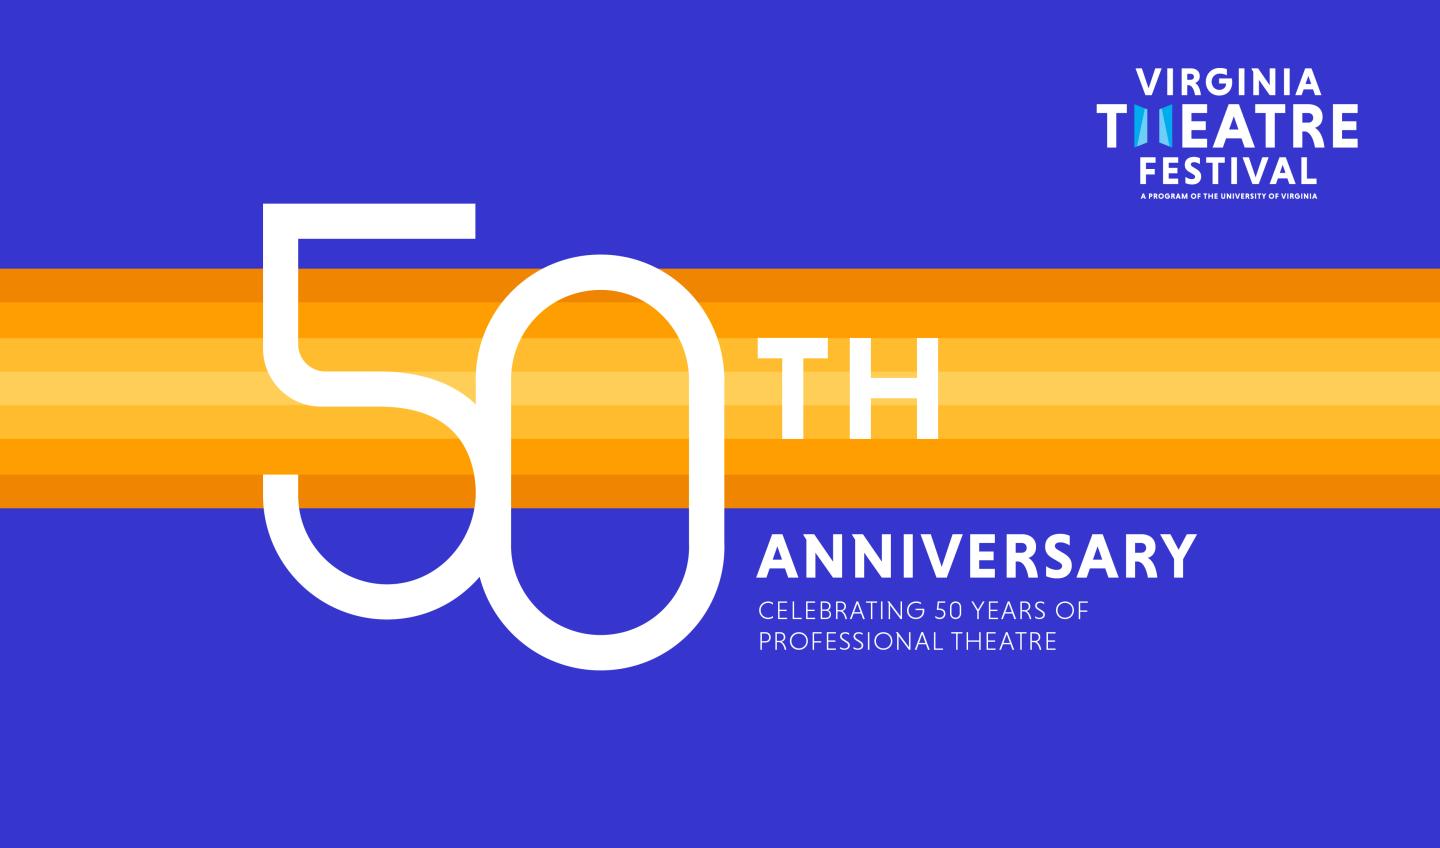 Virginia Theatre Festival 50th Anniversary